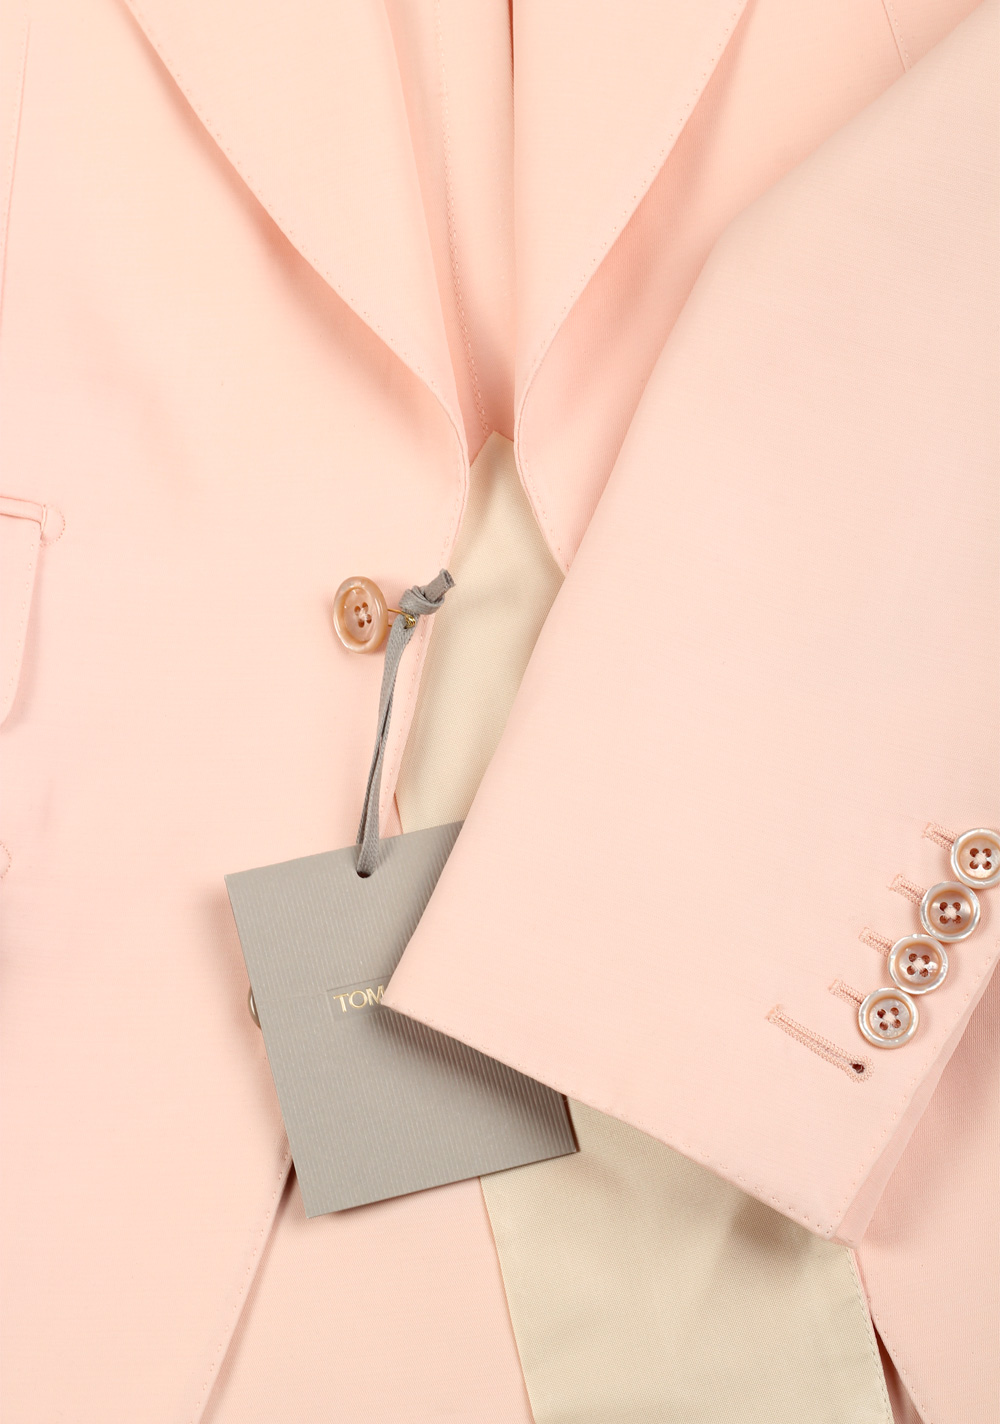 TOM FORD Atticus Pink Suit Size 46 / 36R U.S. | Costume Limité